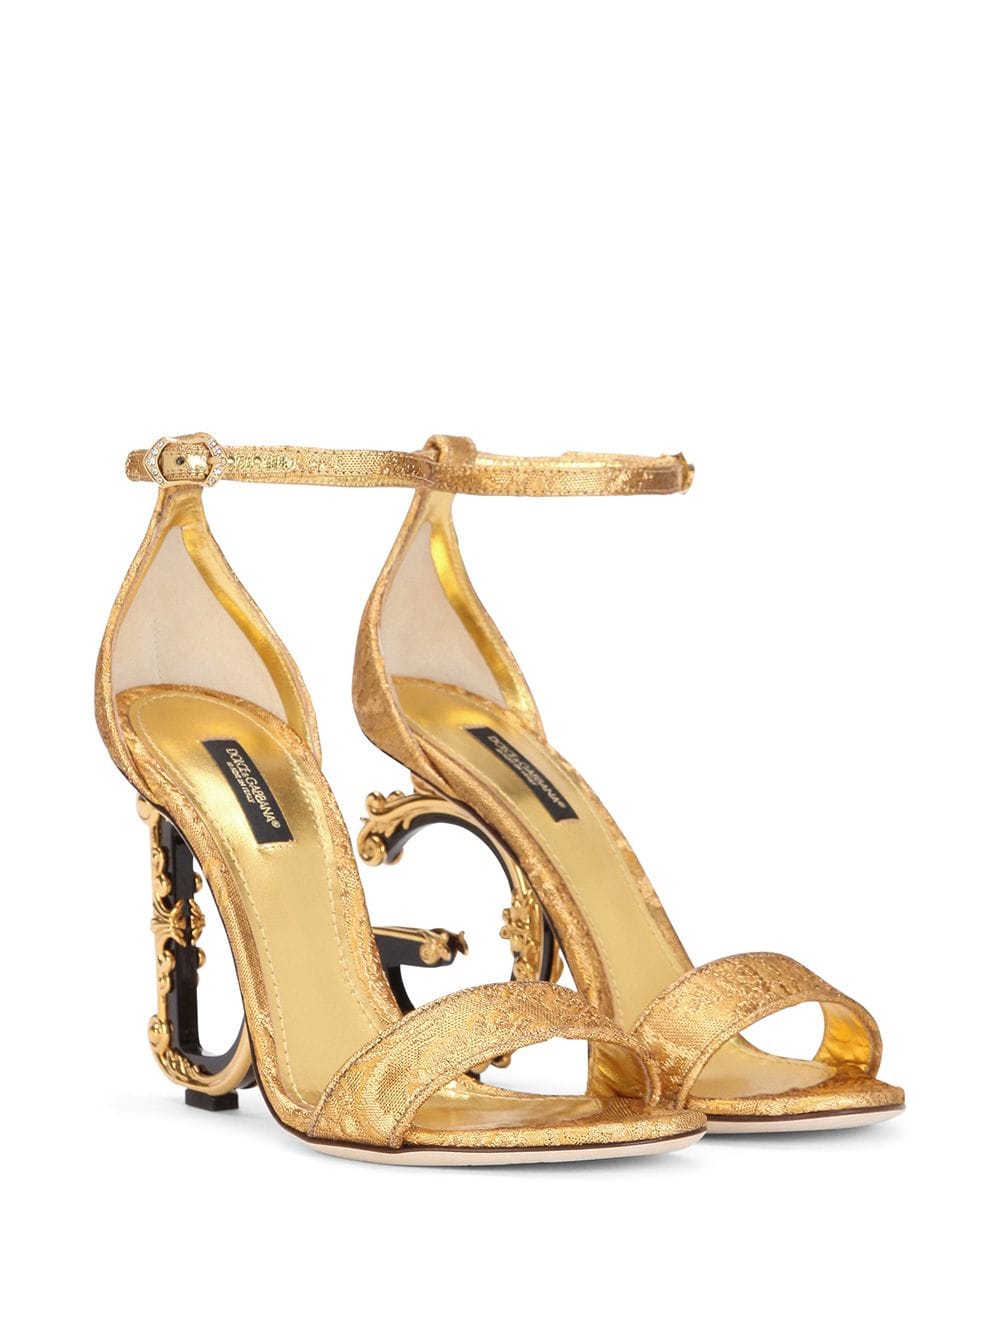 Dolce & Gabbana Sculpted High Heel Sandals - Farfetch